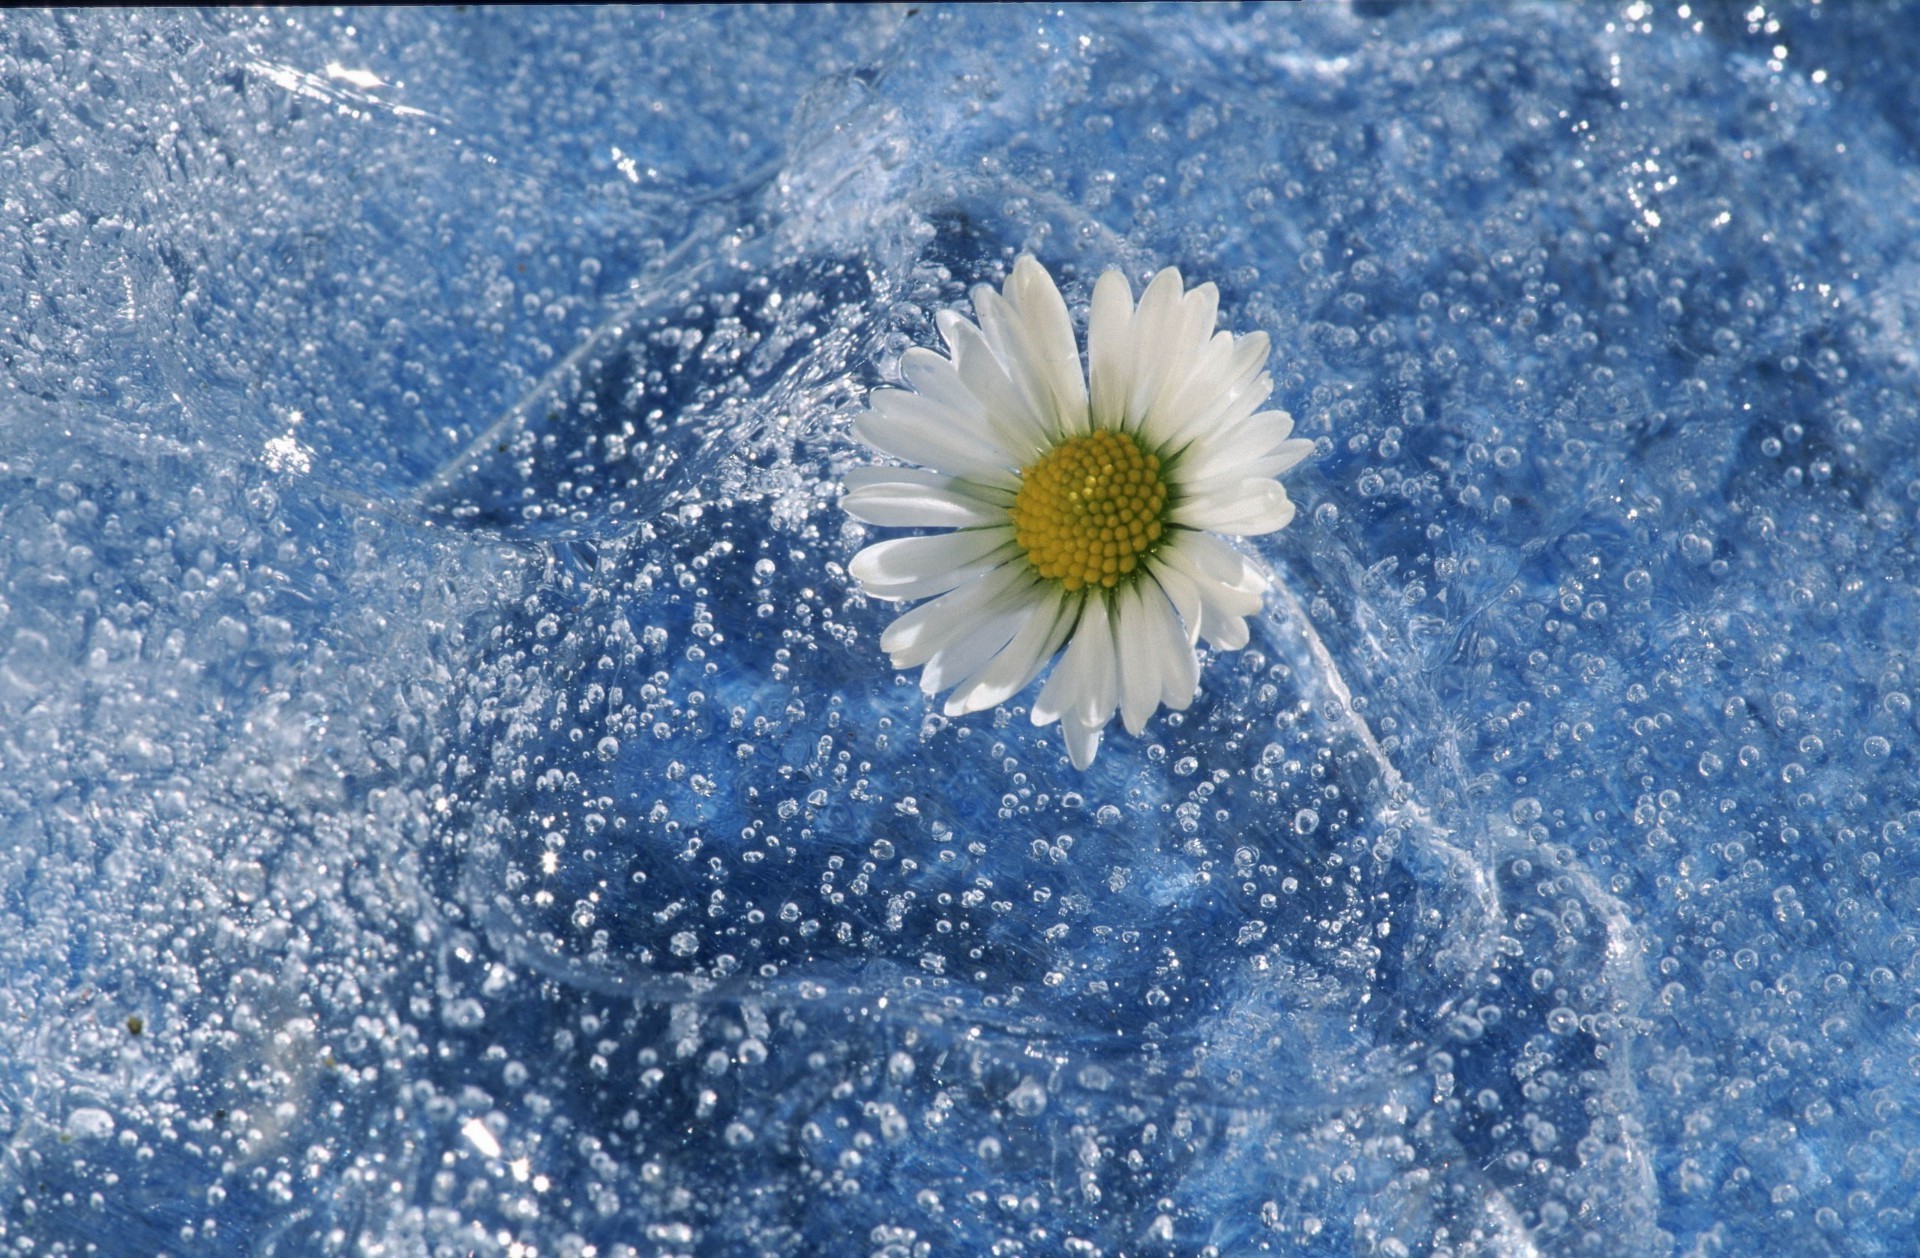 цветы в воде снег зима мороз природа холодная снежинка сезон замороженные рабочего стола яркий на открытом воздухе погода лед